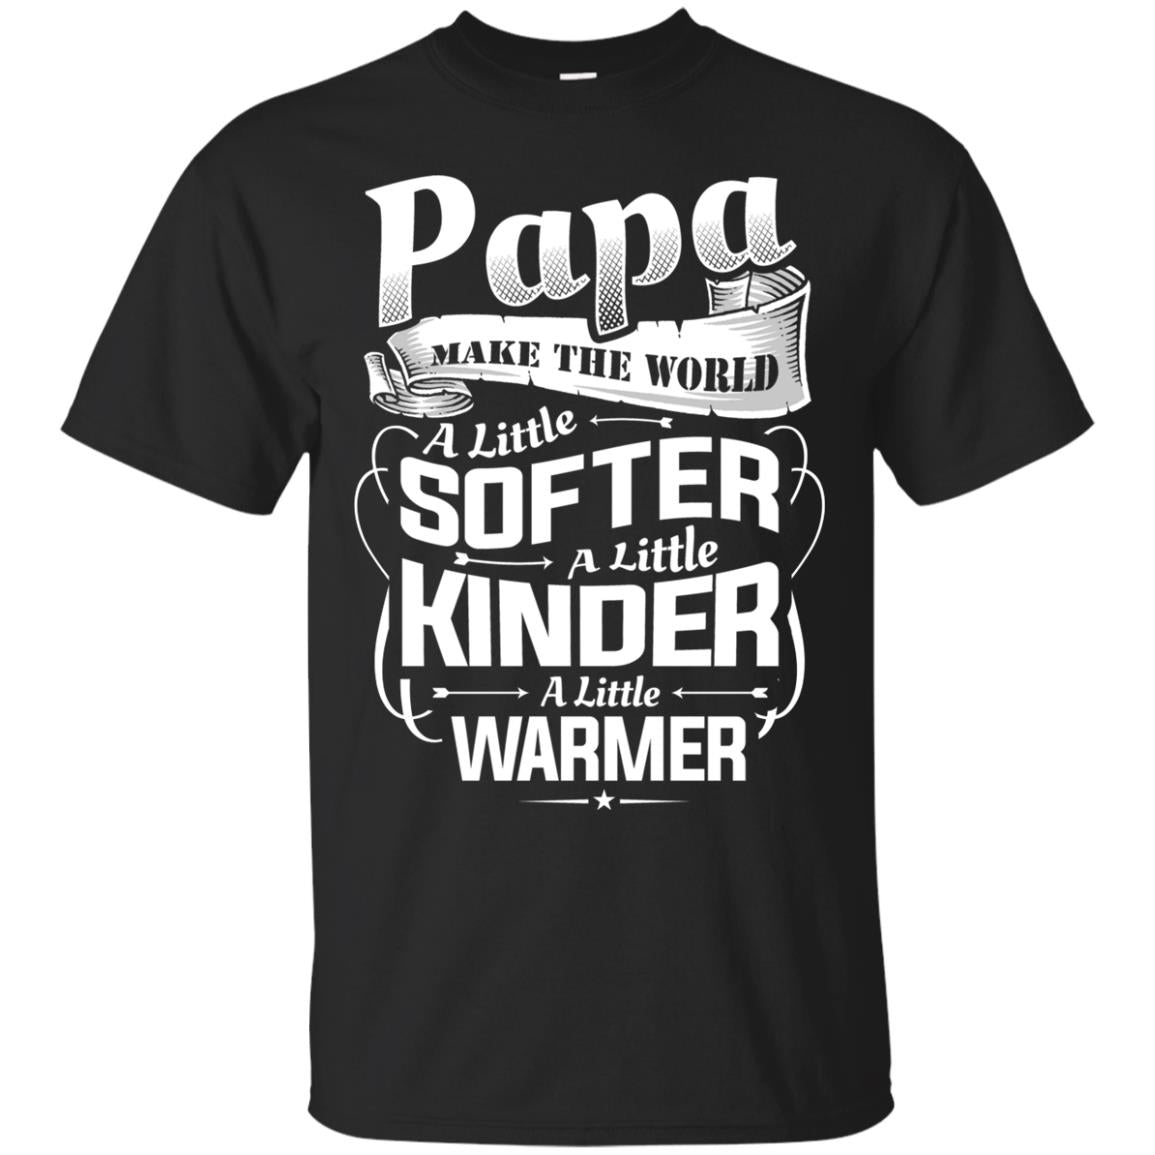 Papa Make The World A Little Softer A Little Kinder A Little Warmer